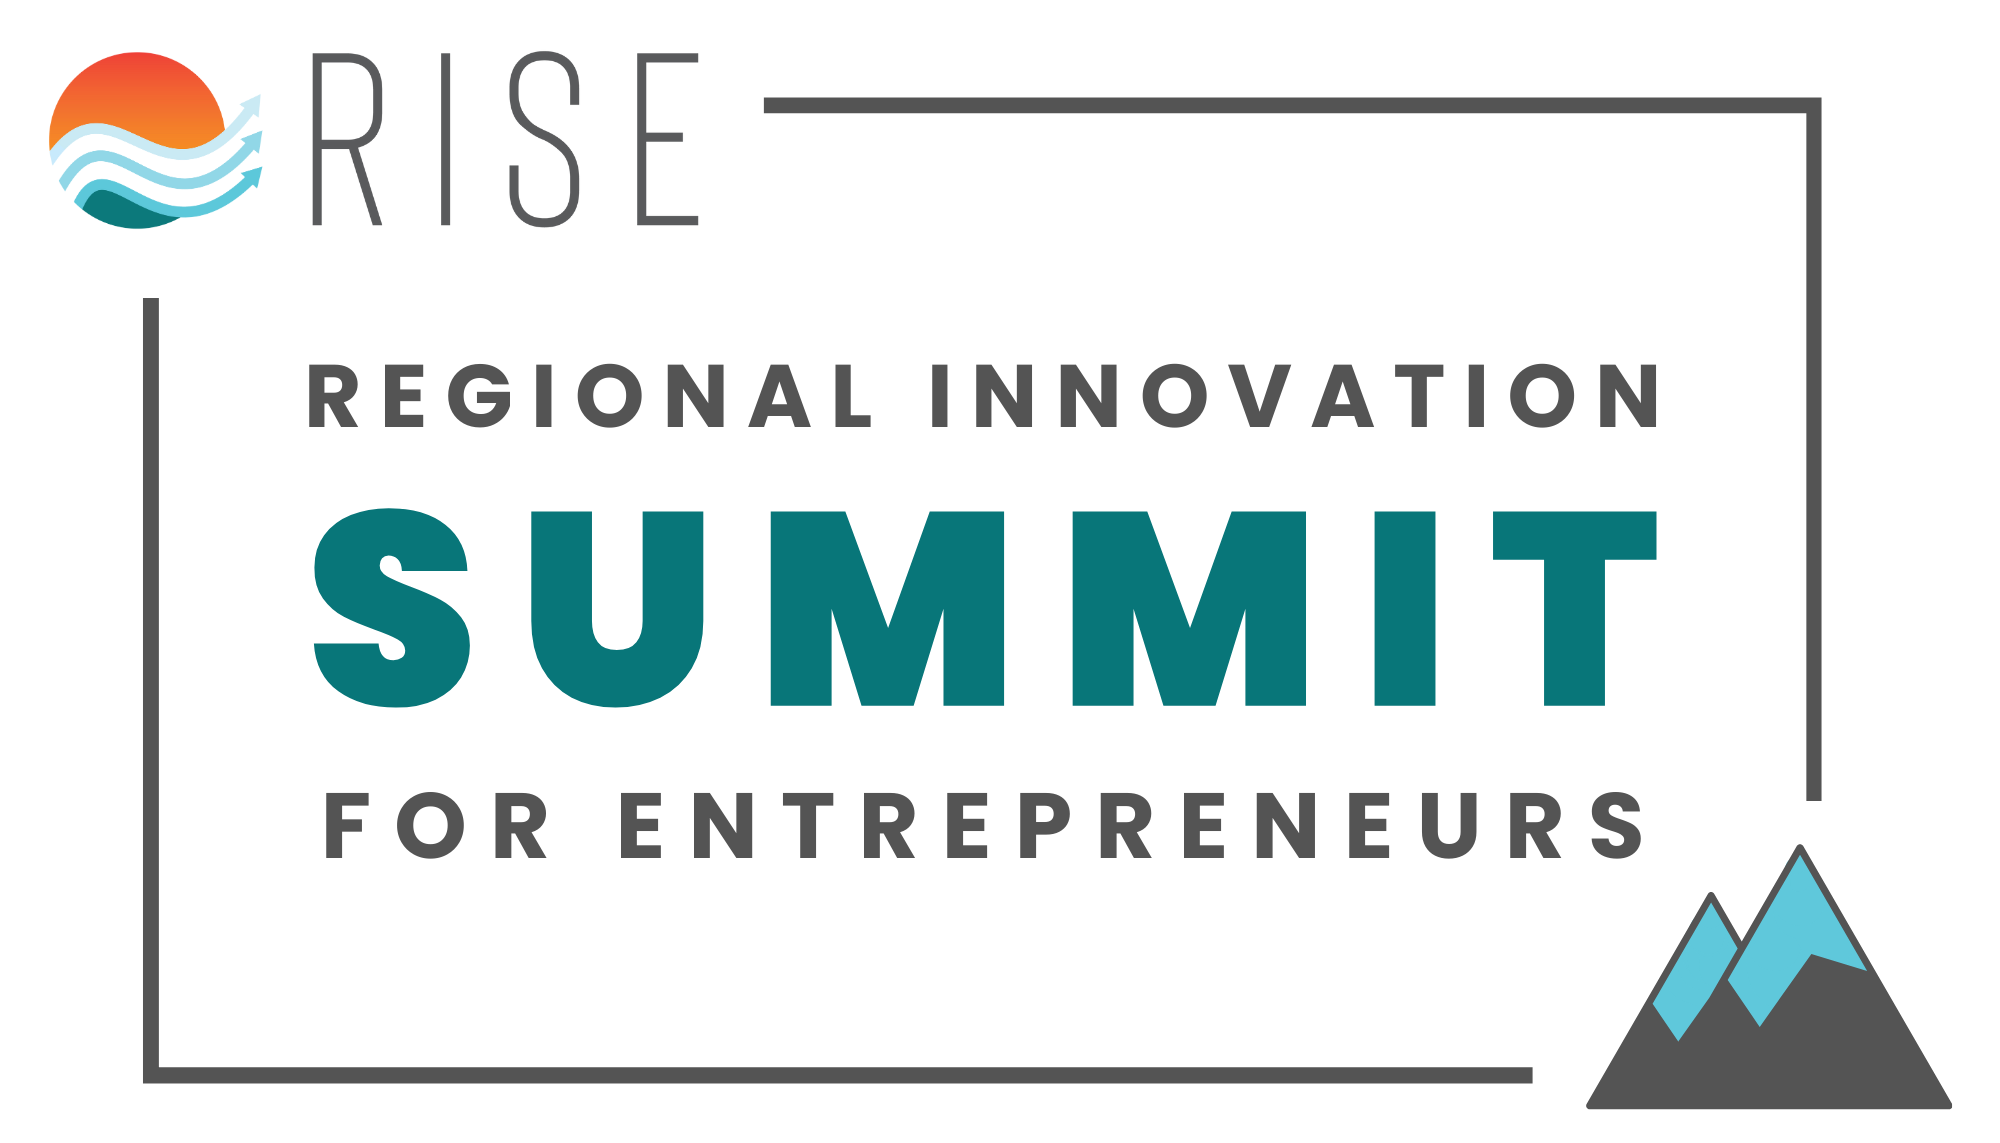 RISE Innovation Summit for Entrepreneurs